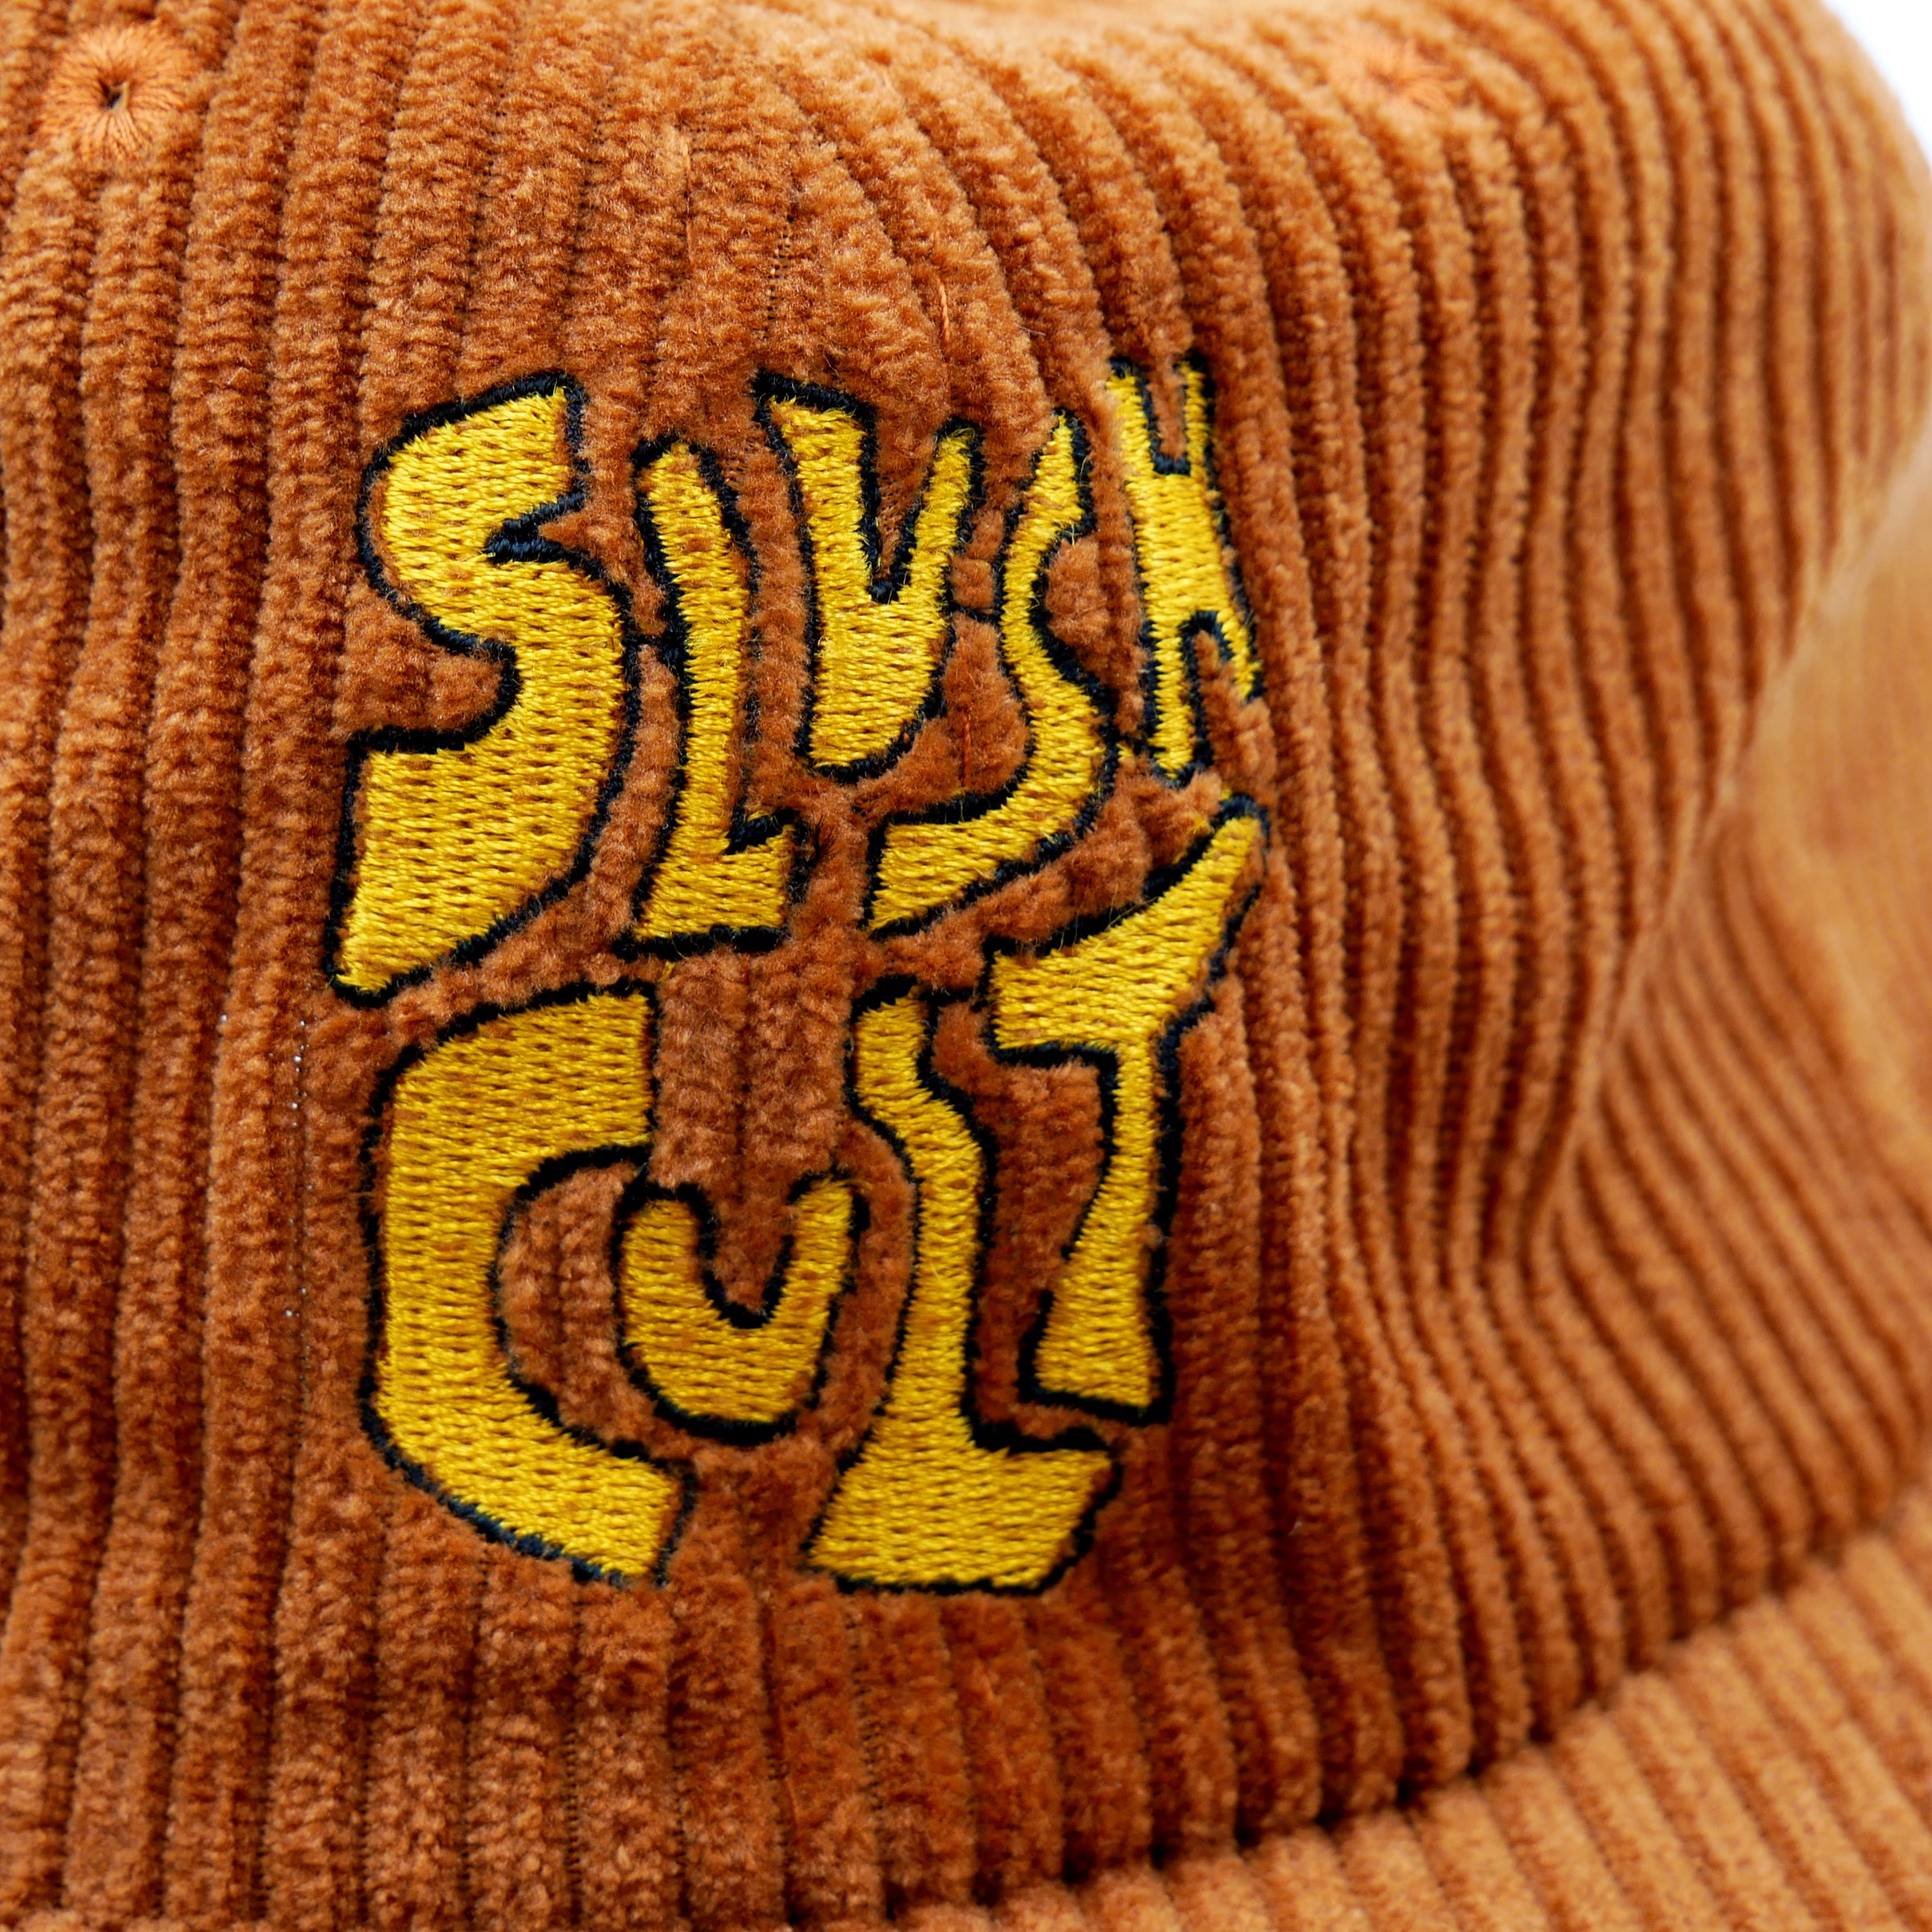 Stacked Logo Corduroy 6 Panel Hat (Orange) Headwear Slushcult    Slushcult